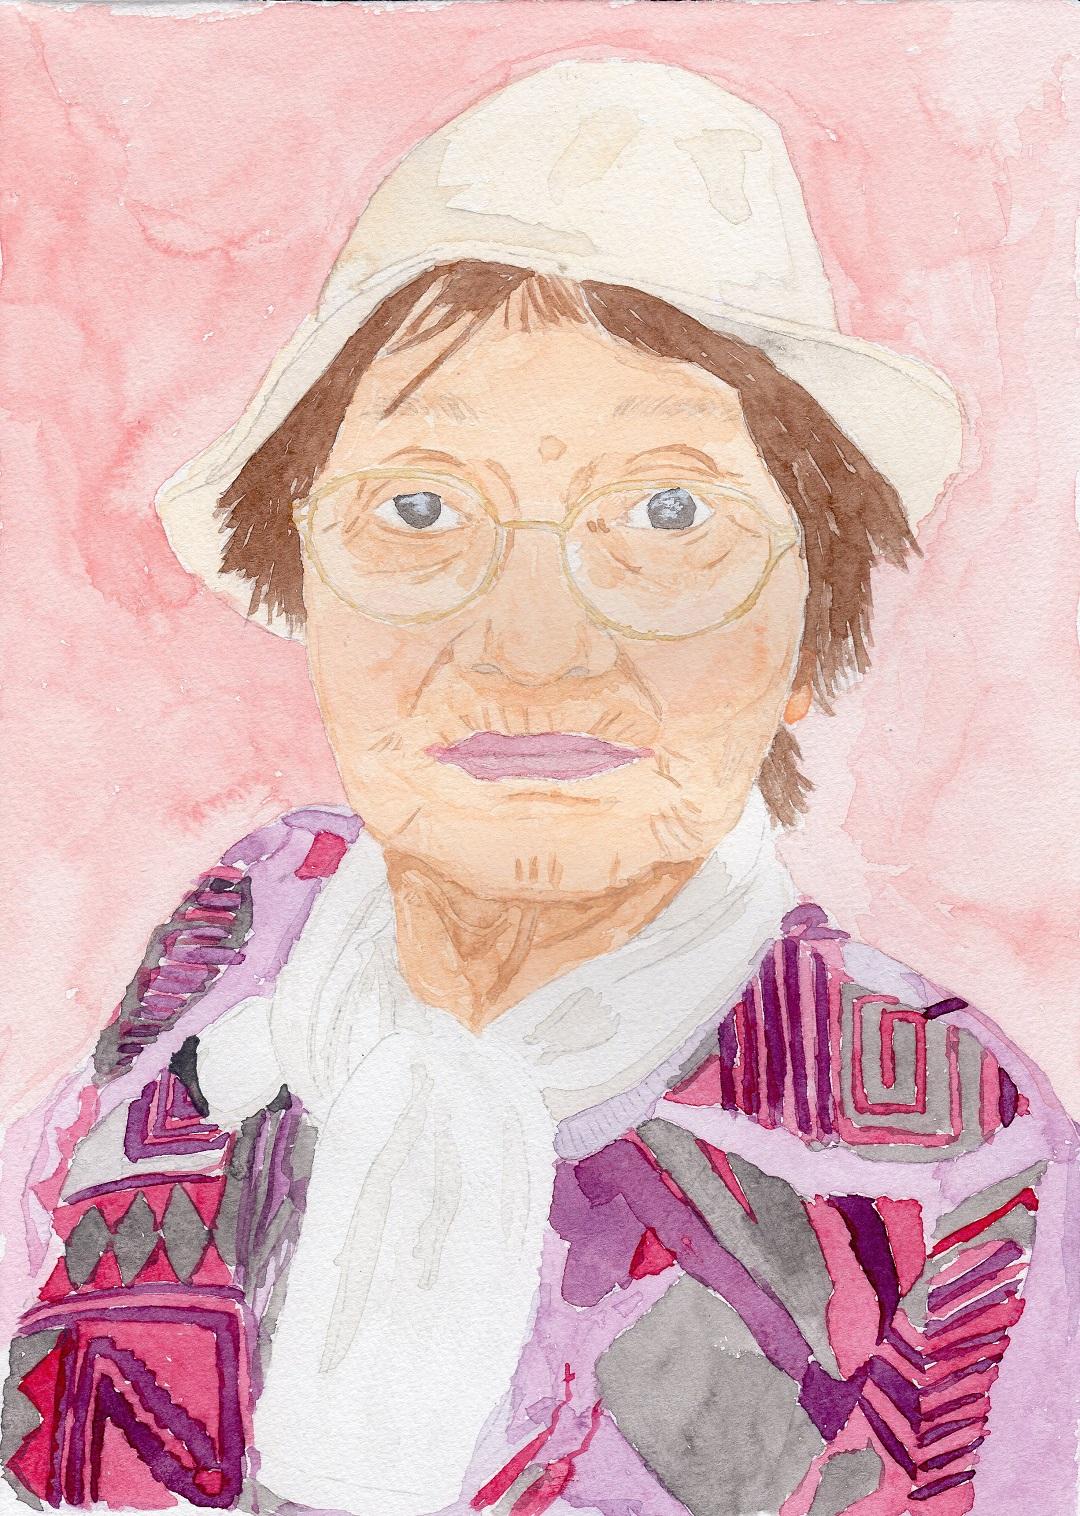 白色の帽子を被りメガネをかけた女性の上半身を正面から描いた「わたしのおばあちゃん」というタイトルの最優秀賞作品の写真